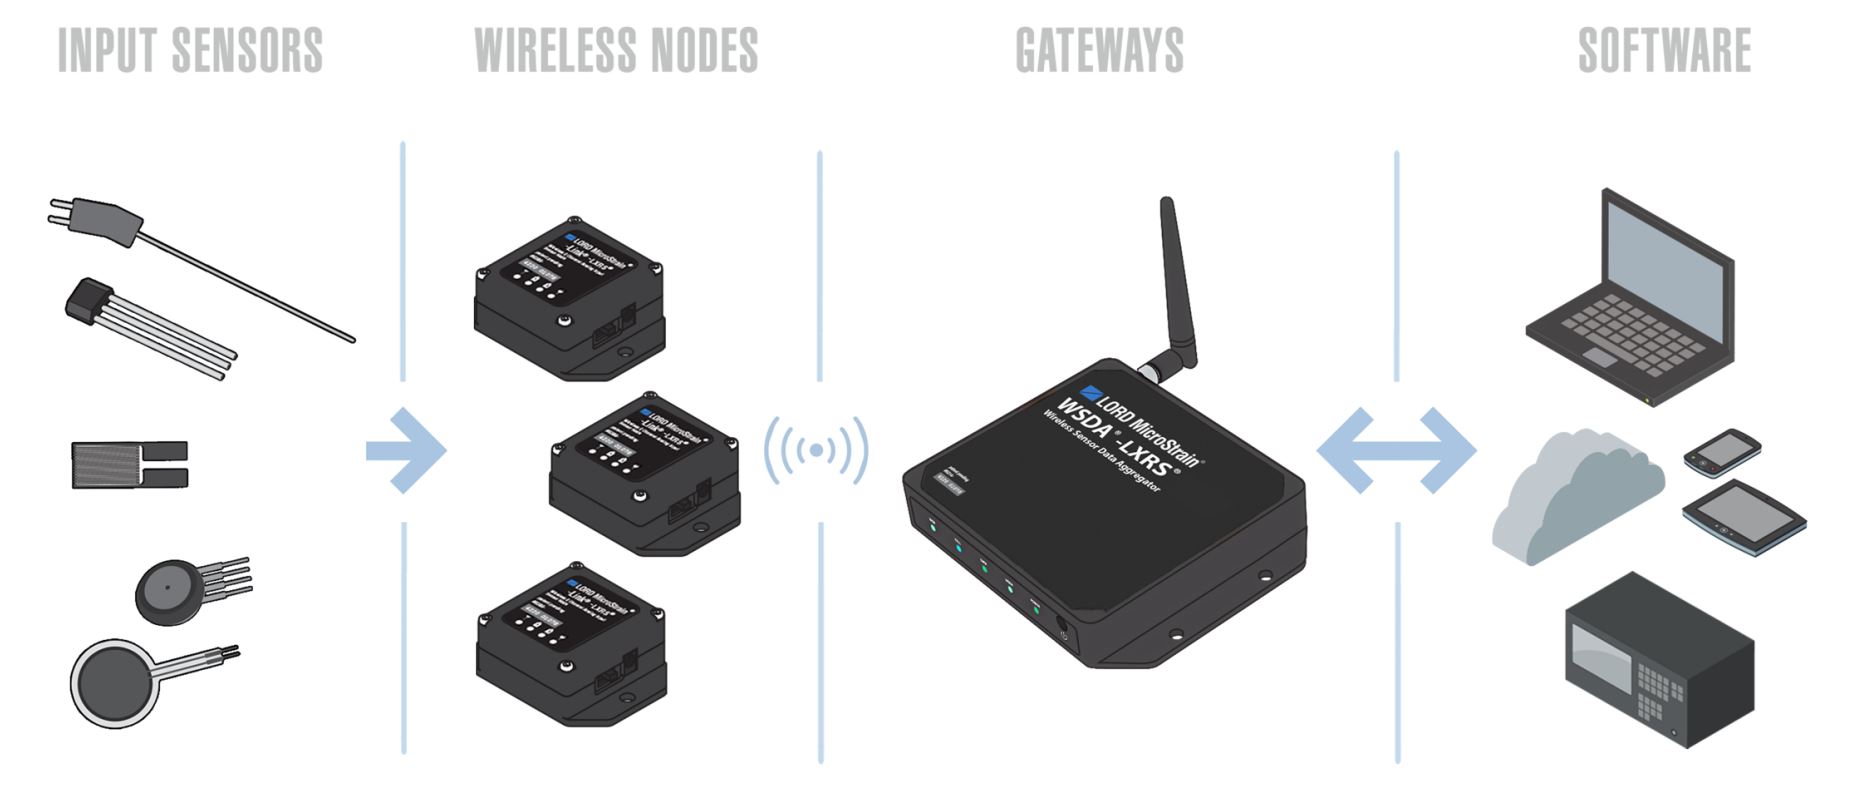 Wireless Strain Gauge Sensor (V-Link-LXRS Wireless 7 Channel